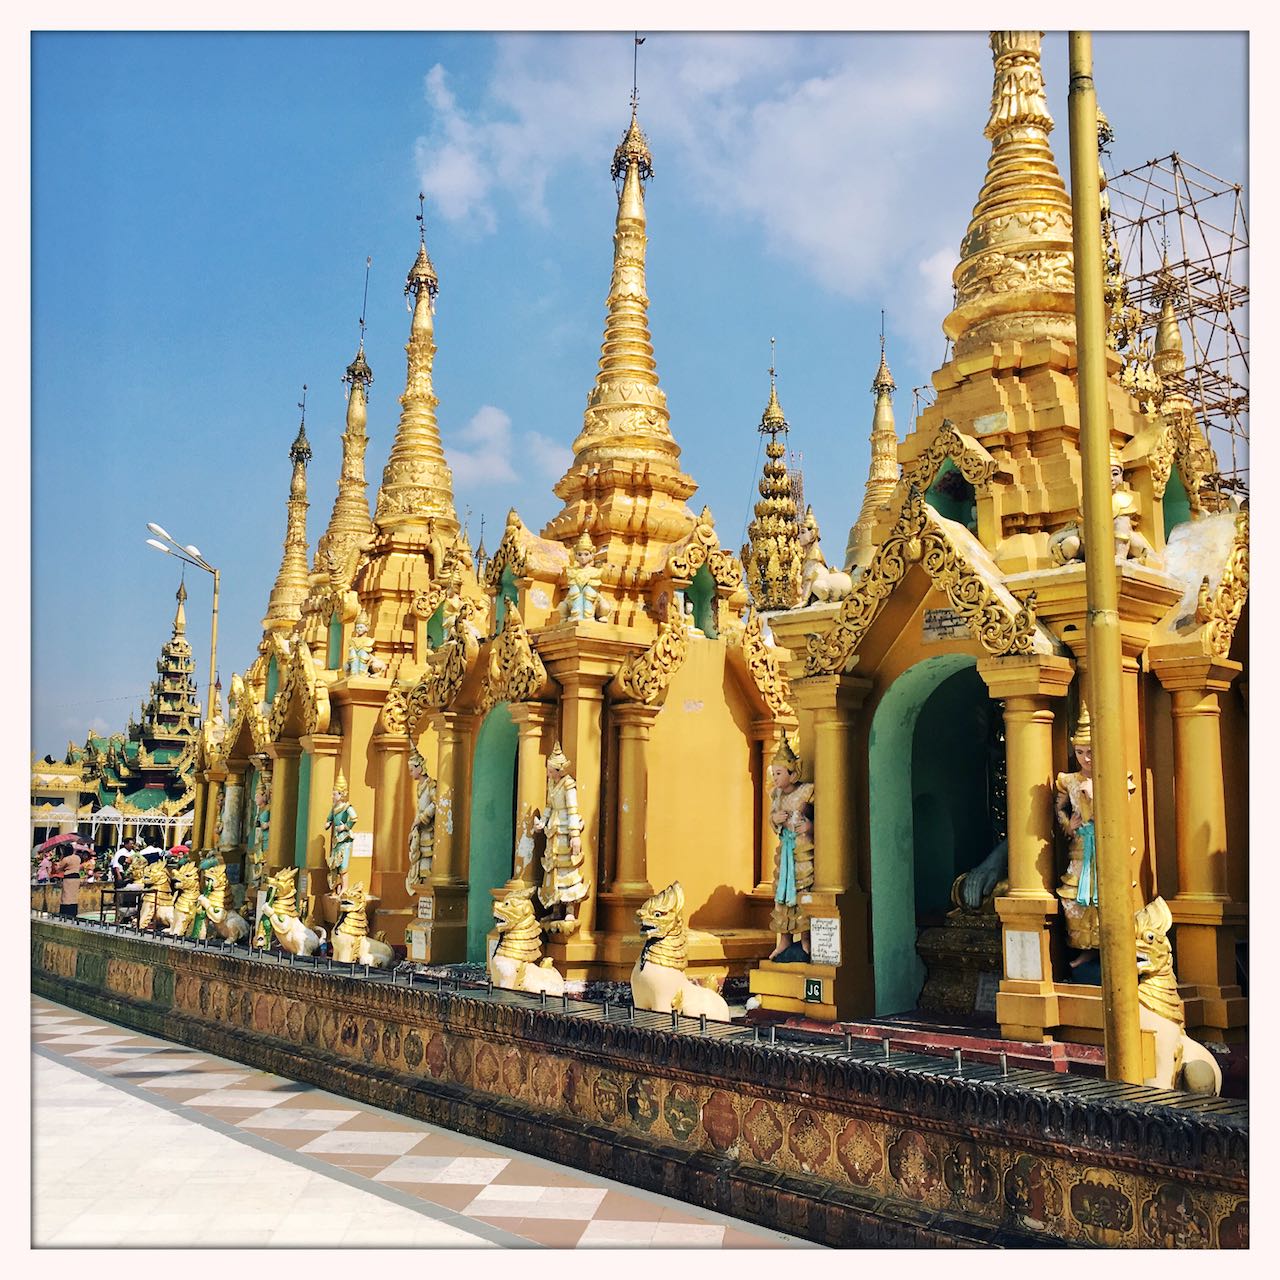 Shwedagon Pagoda Architecture